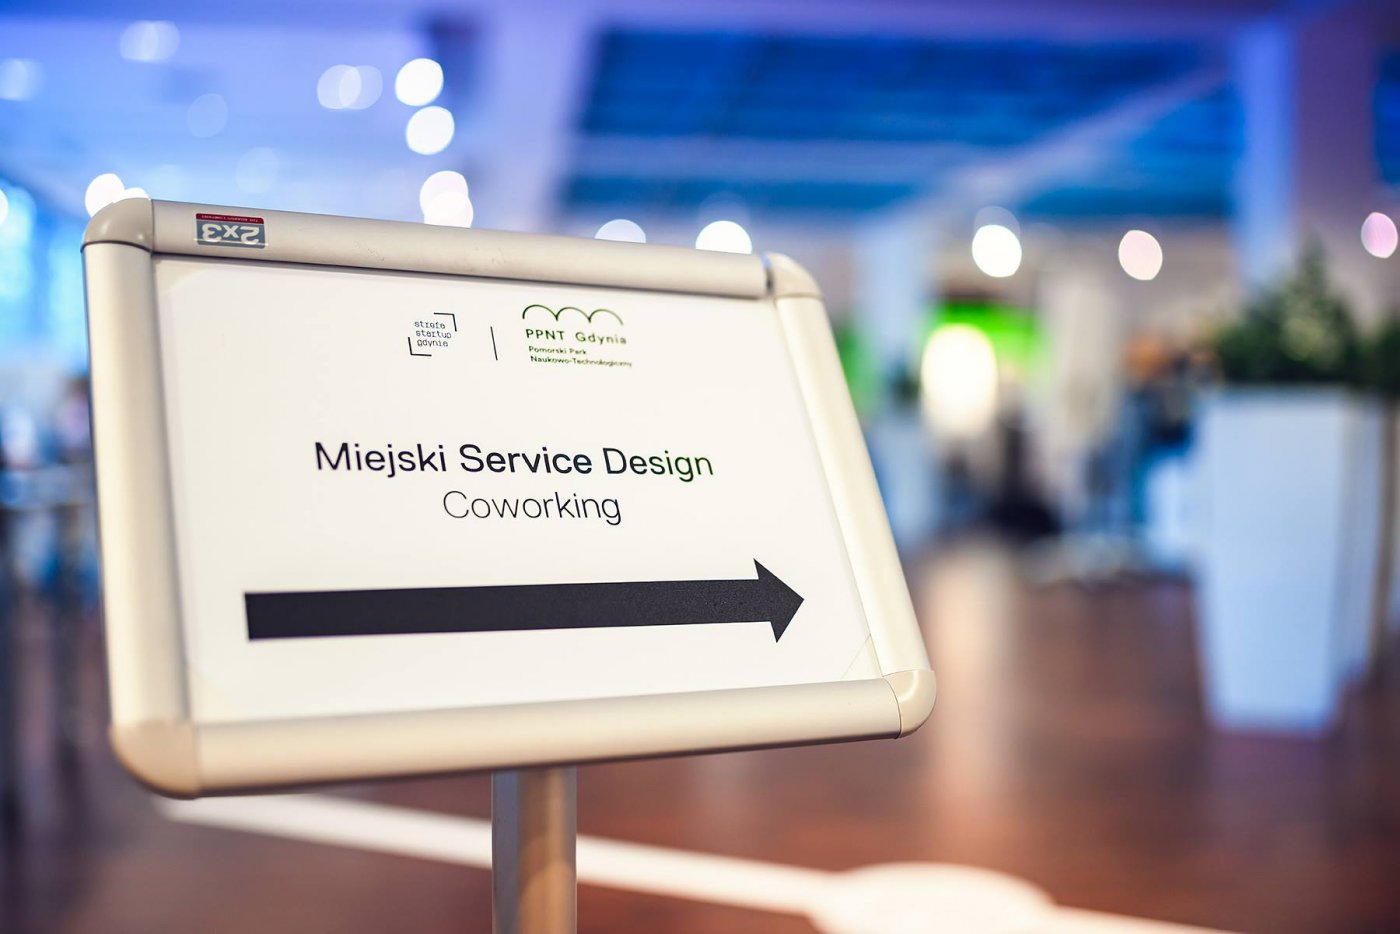 „Miejski Service Design” to cykl warsztatów realizowanych przez Strefę Startup Gdynia, fot. Strefa Startup.